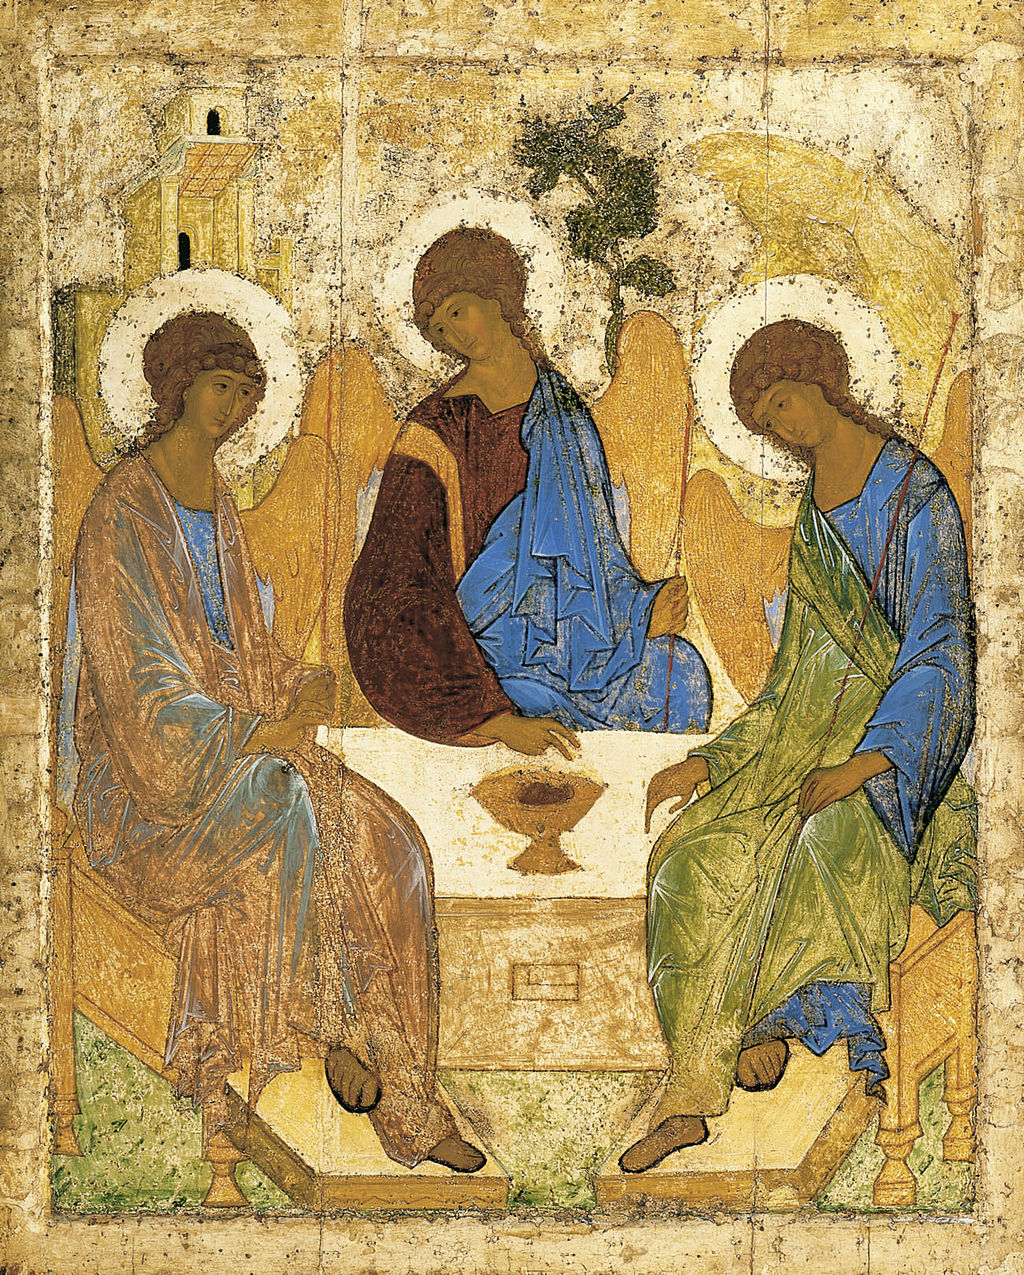 Die Dreifaltigkeitsikone, троица, von Andrei Rubljow, entstanden ca. 1411, heute ausgestellt in der Tretjakow-Galerie in Moskau - Lizenz: gemeinfrei.